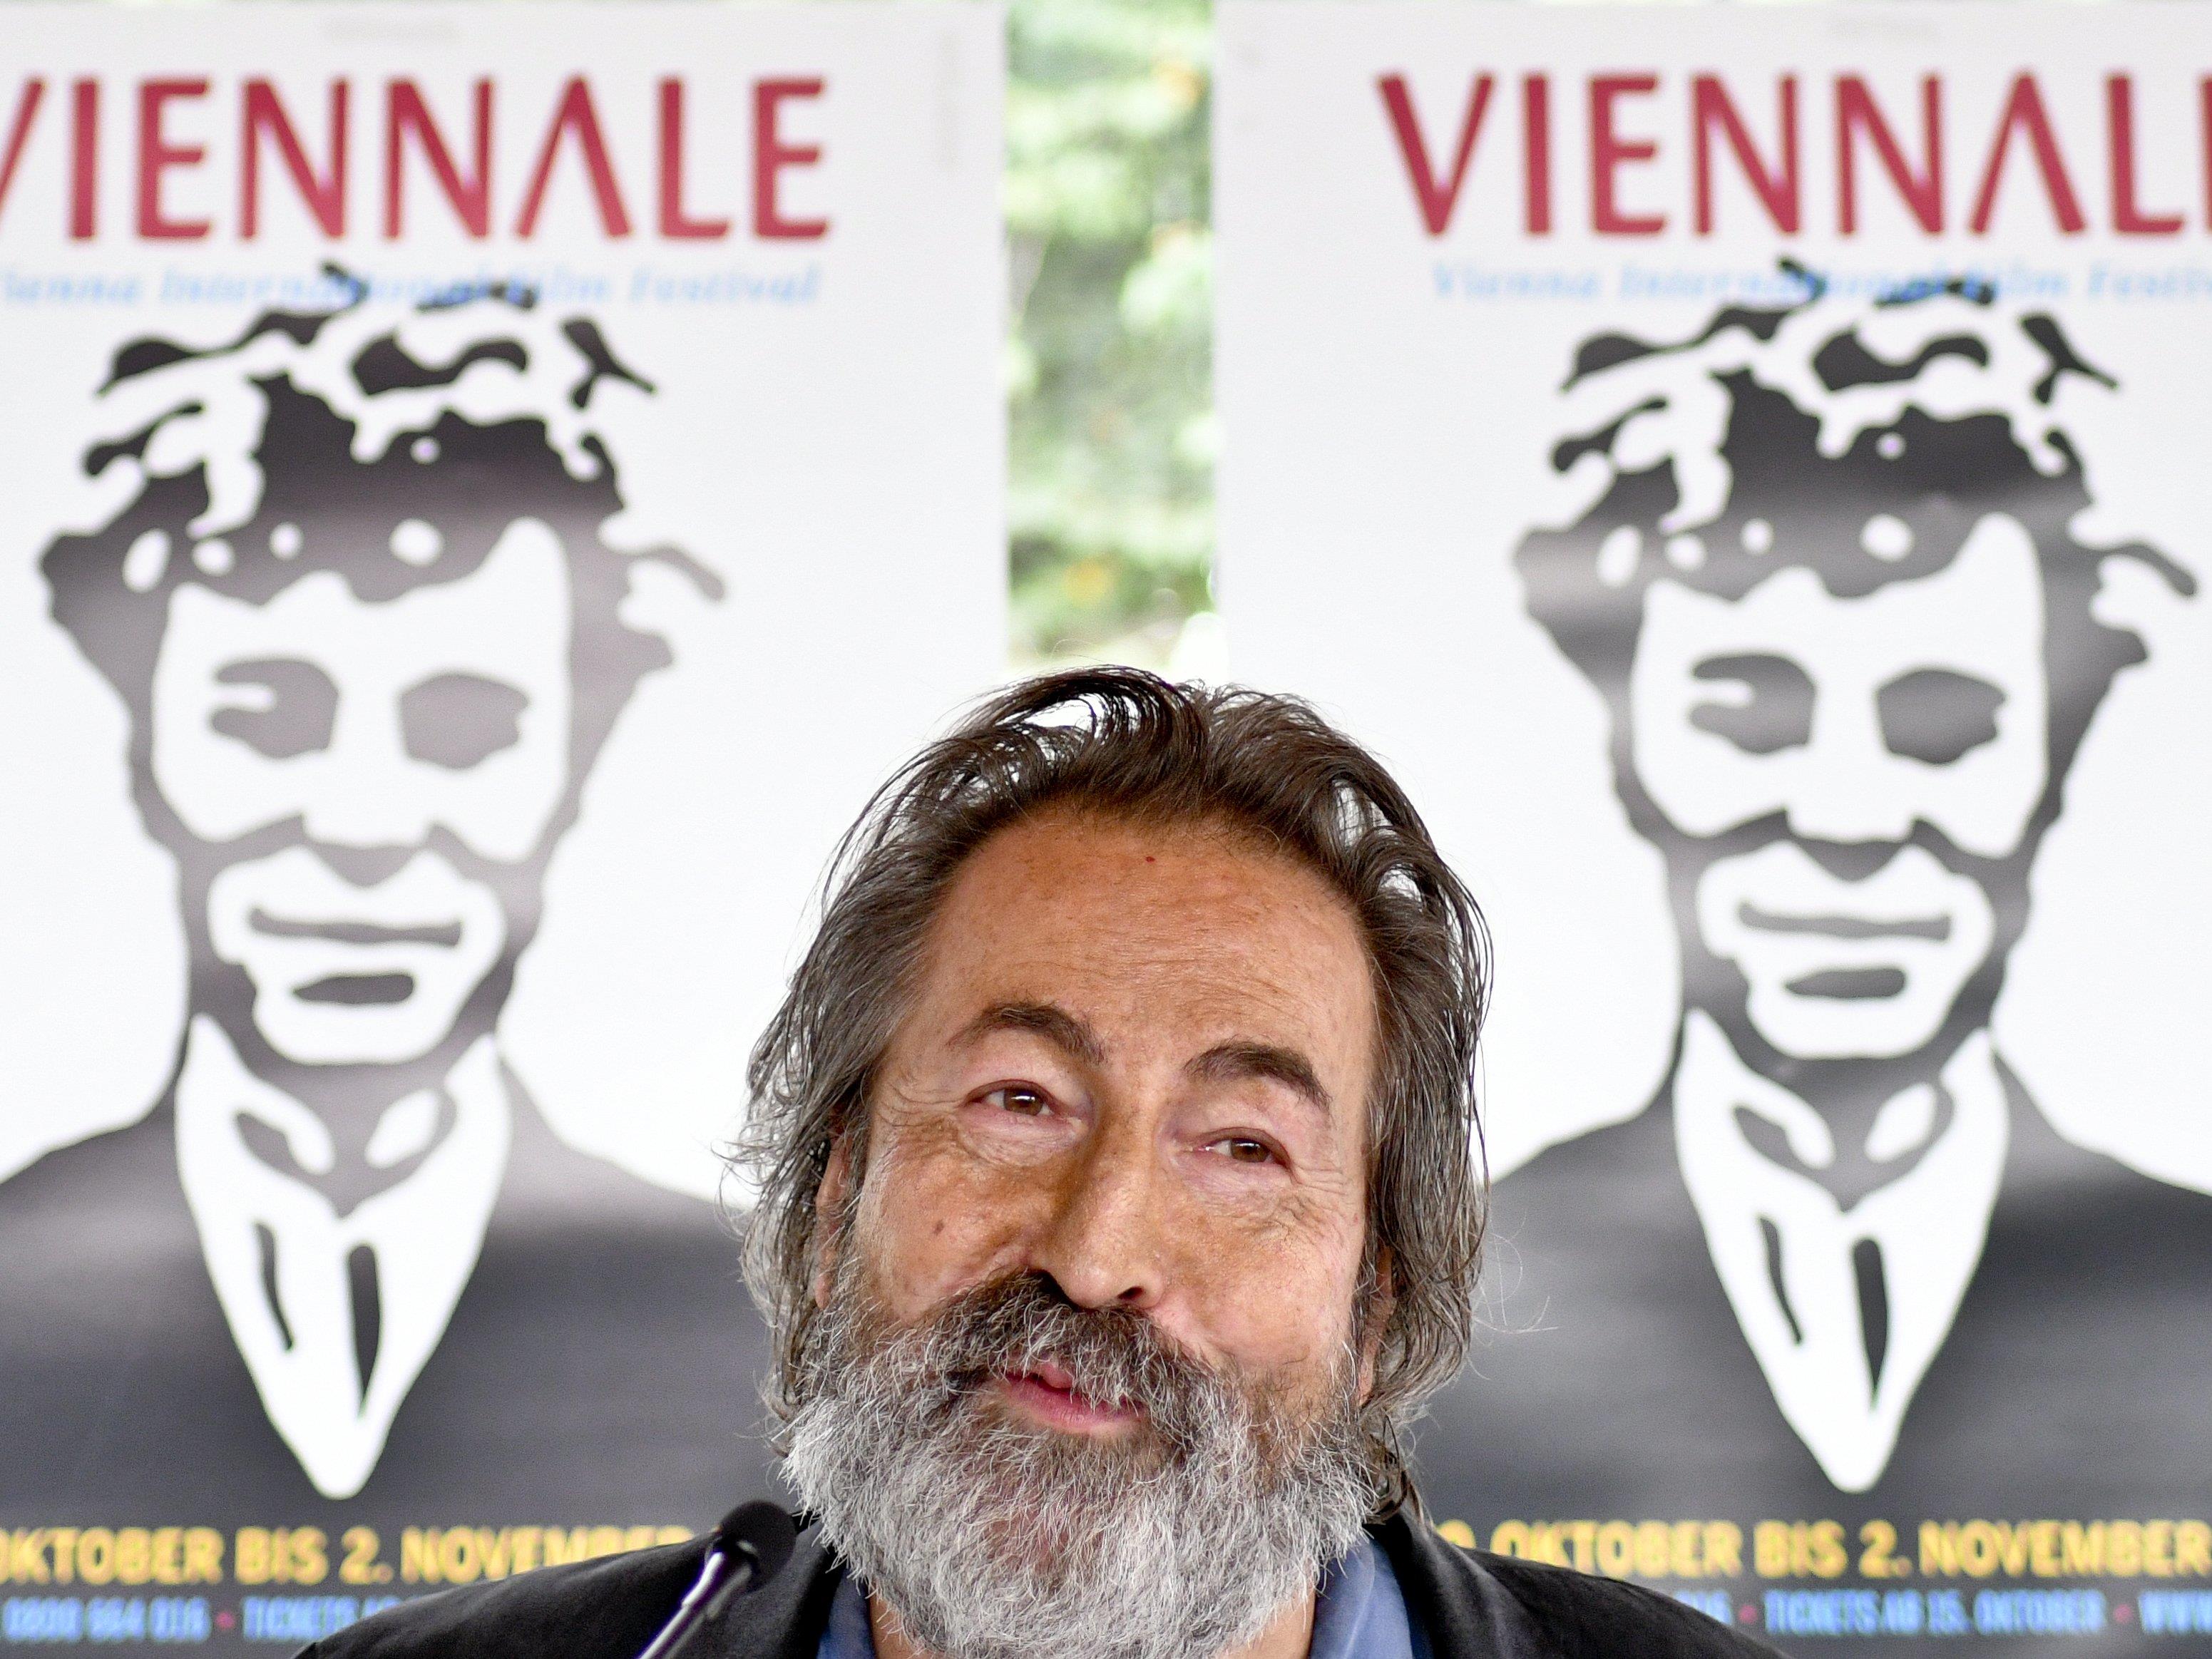 Festivaldirektor Hurch stellt die Viennale 2016 vor